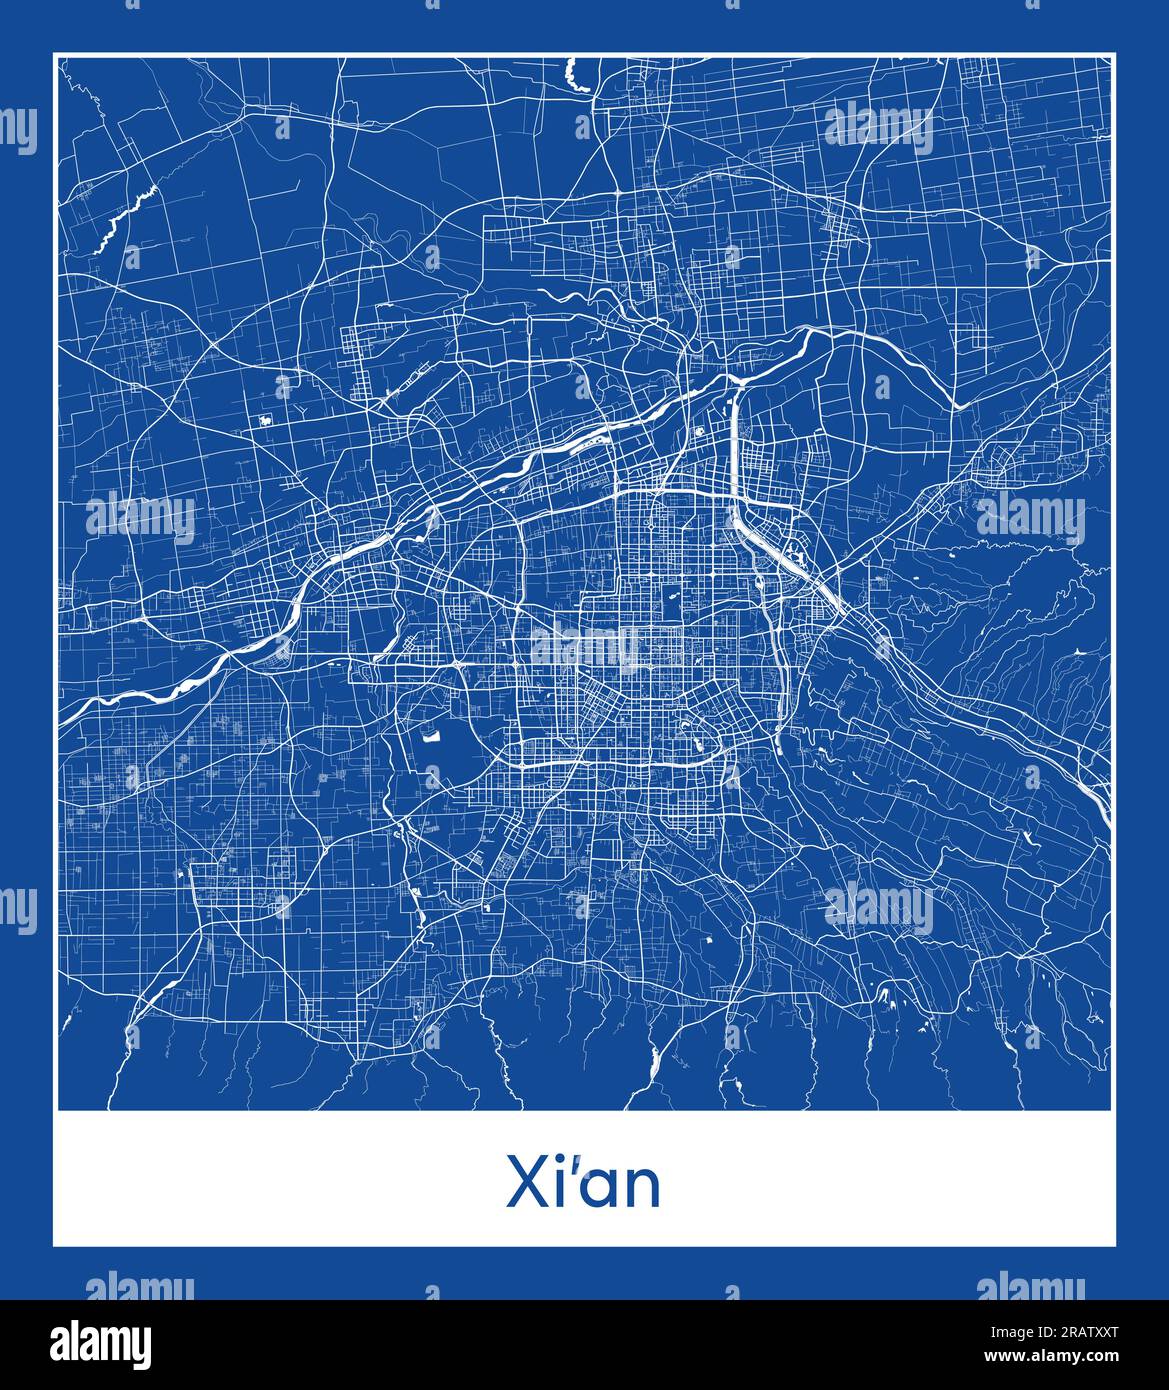 Xi'an China Asia City carte bleu illustration vectorielle Illustration de Vecteur